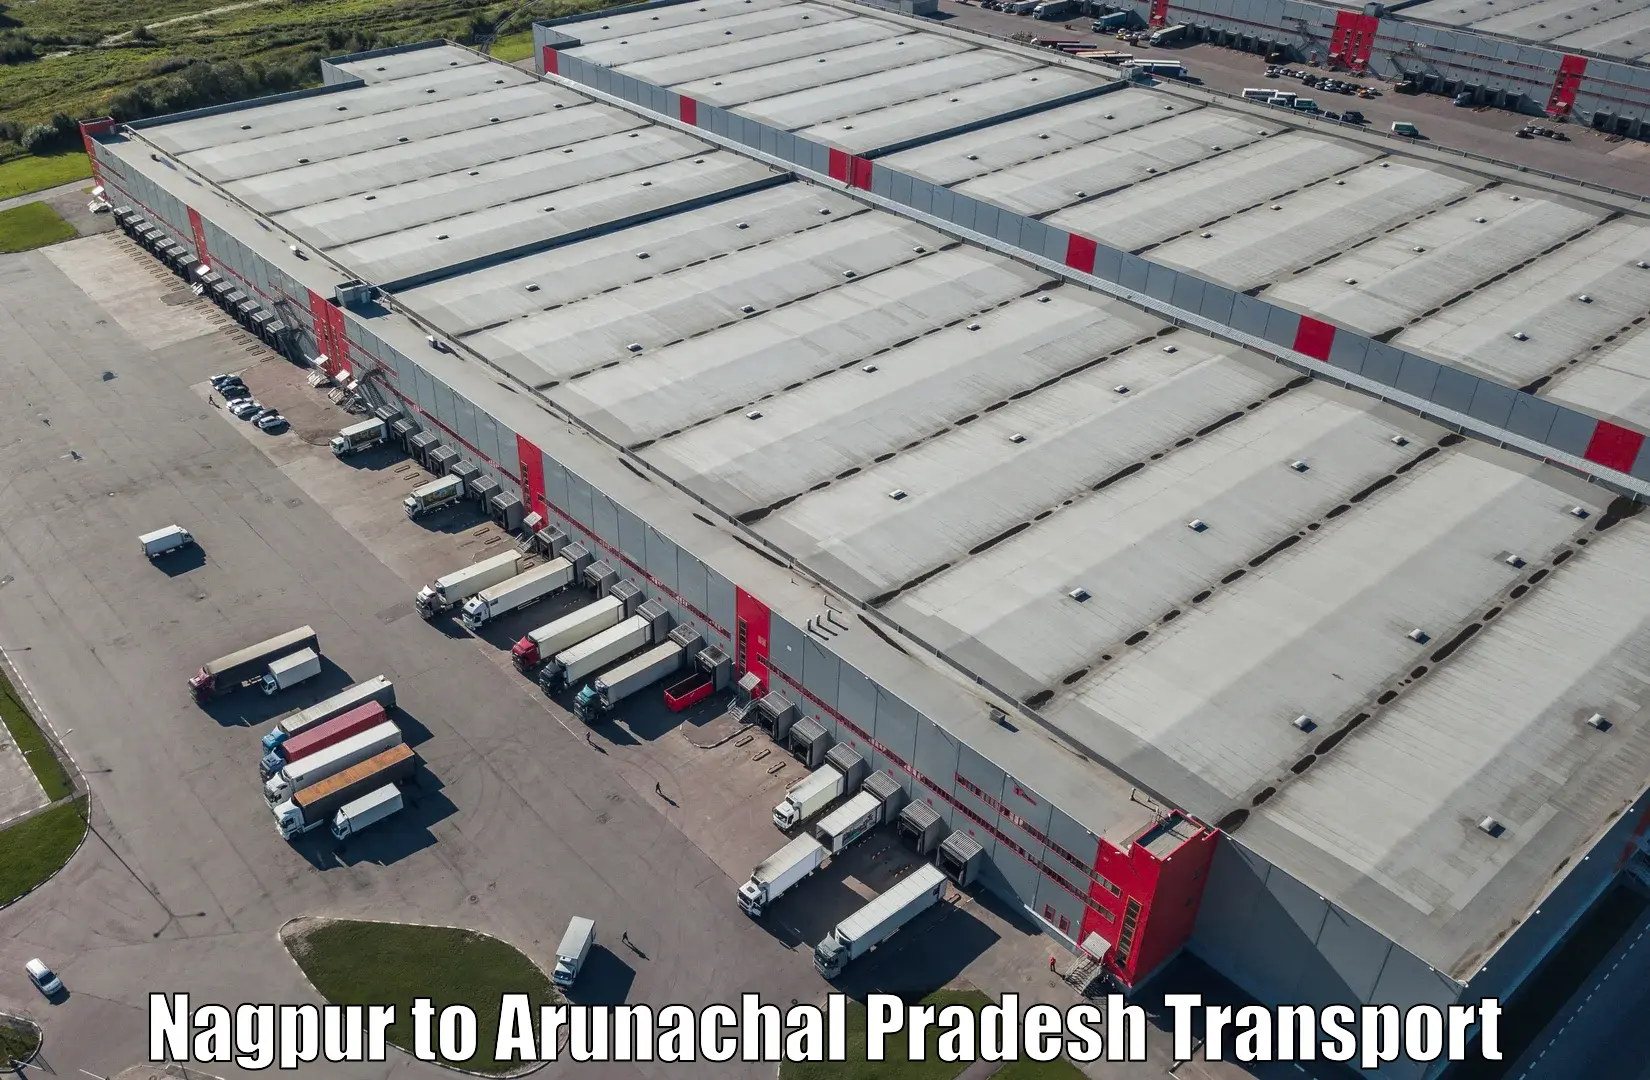 Land transport services Nagpur to Namsai